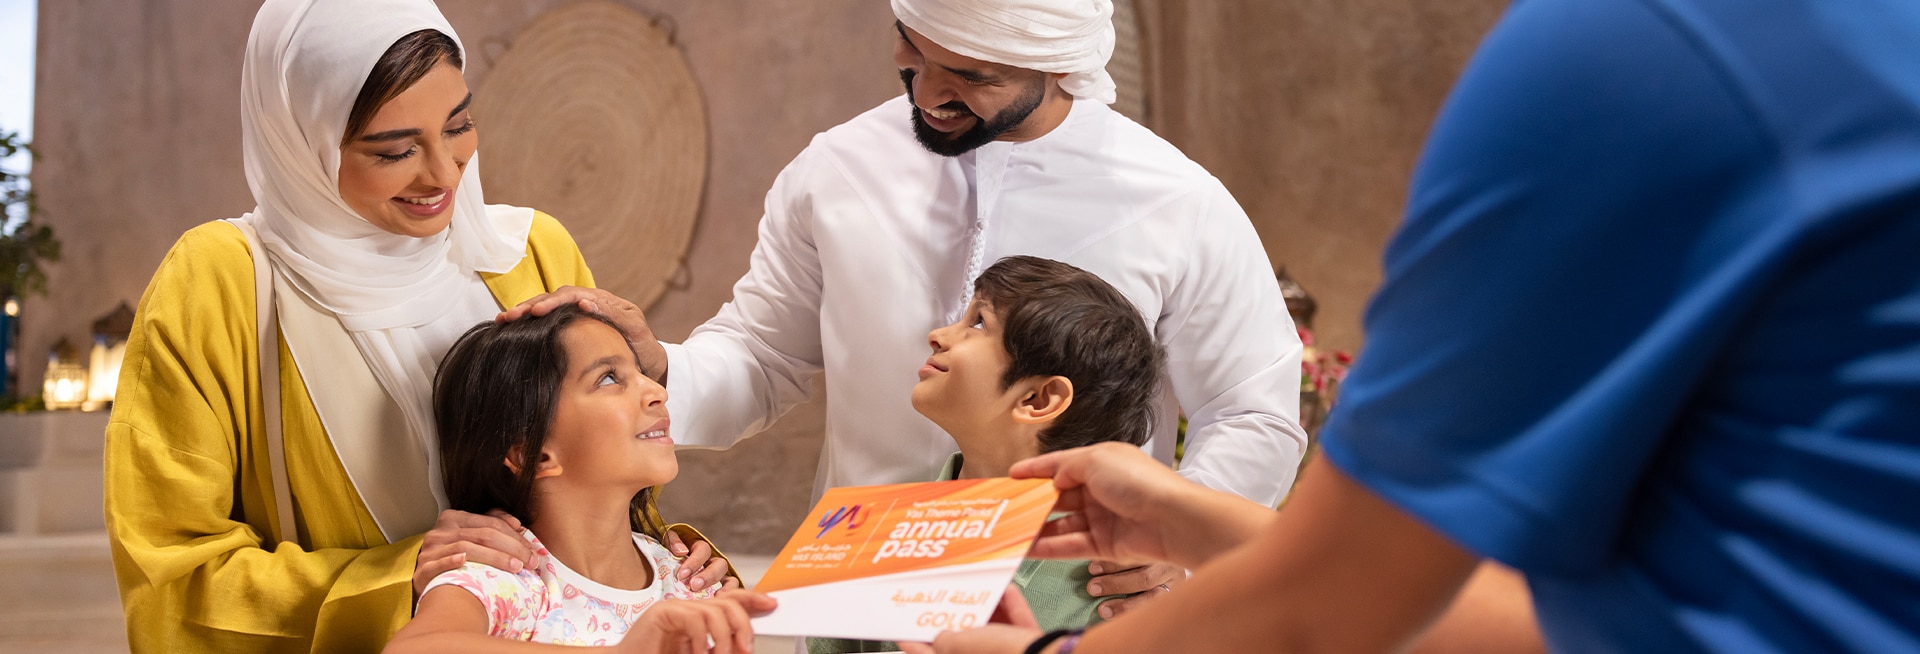 Emirati family buying Annual Pass